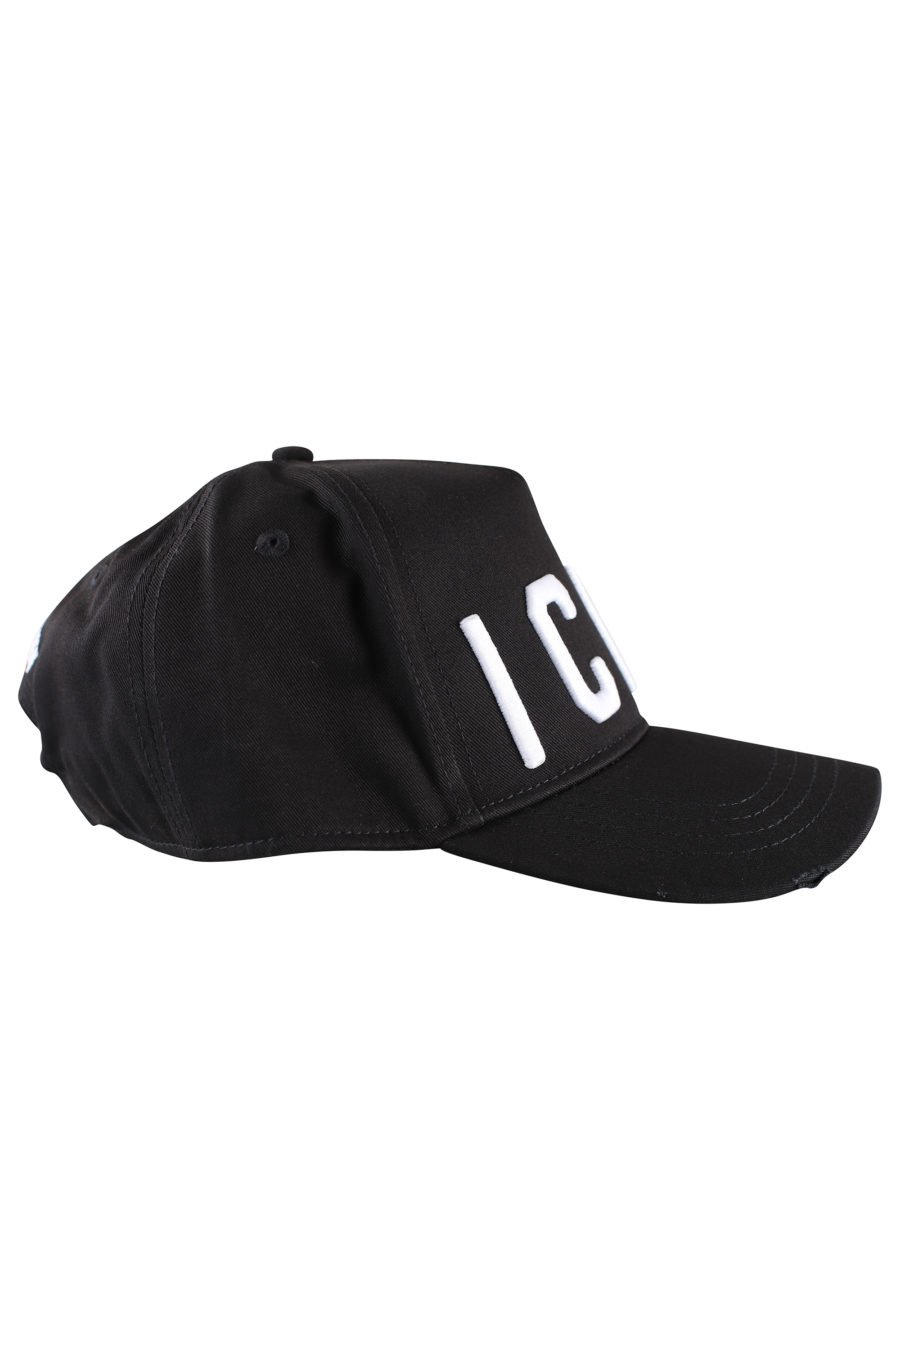 Gorra negra ajustable con logo "icon" blanco - IMG 9994